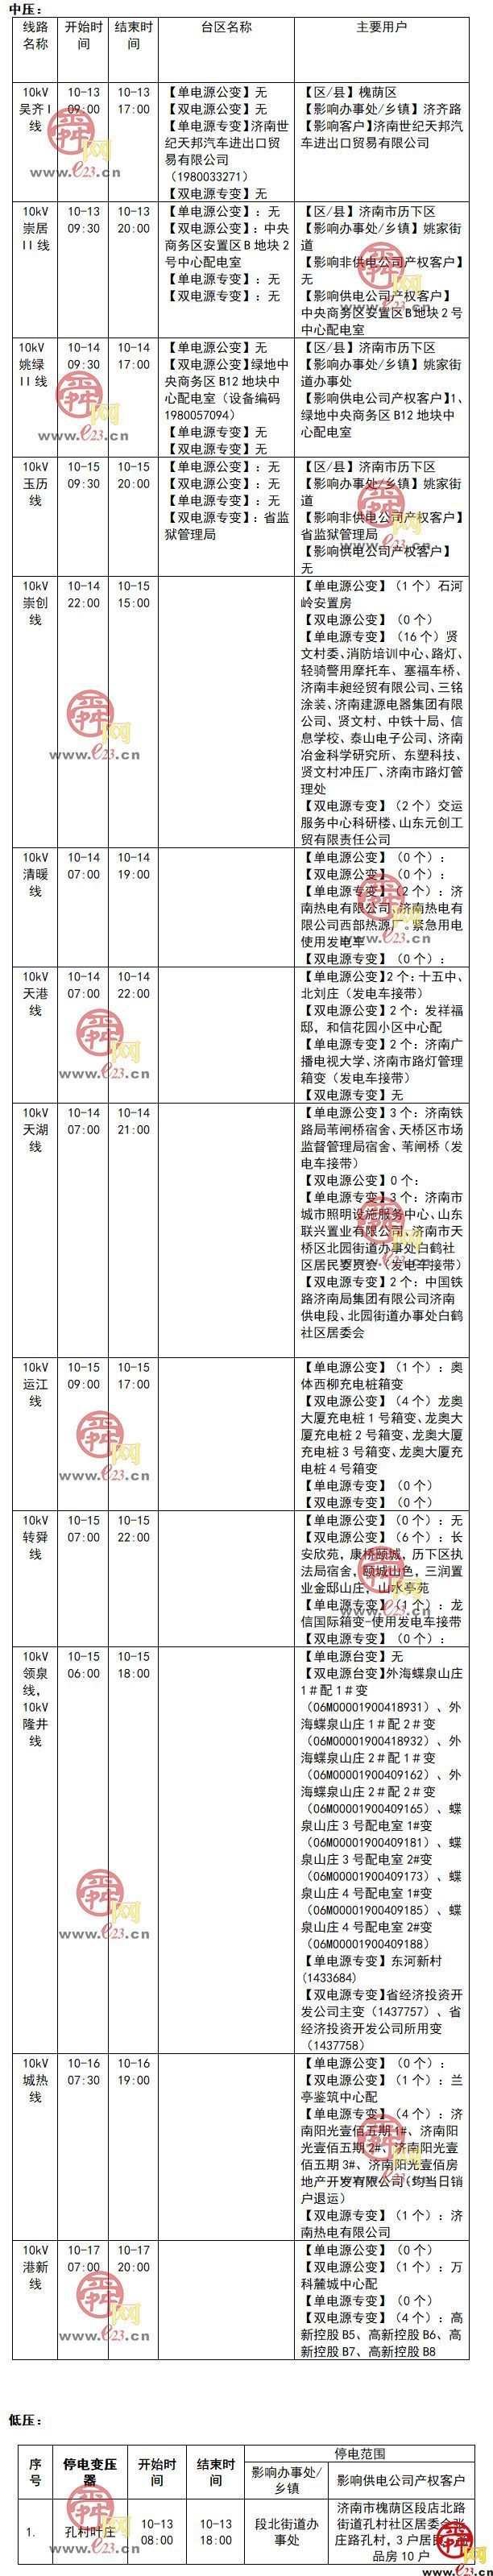 2021年10月11日至10月24日济南部分区域电力设备检修通知